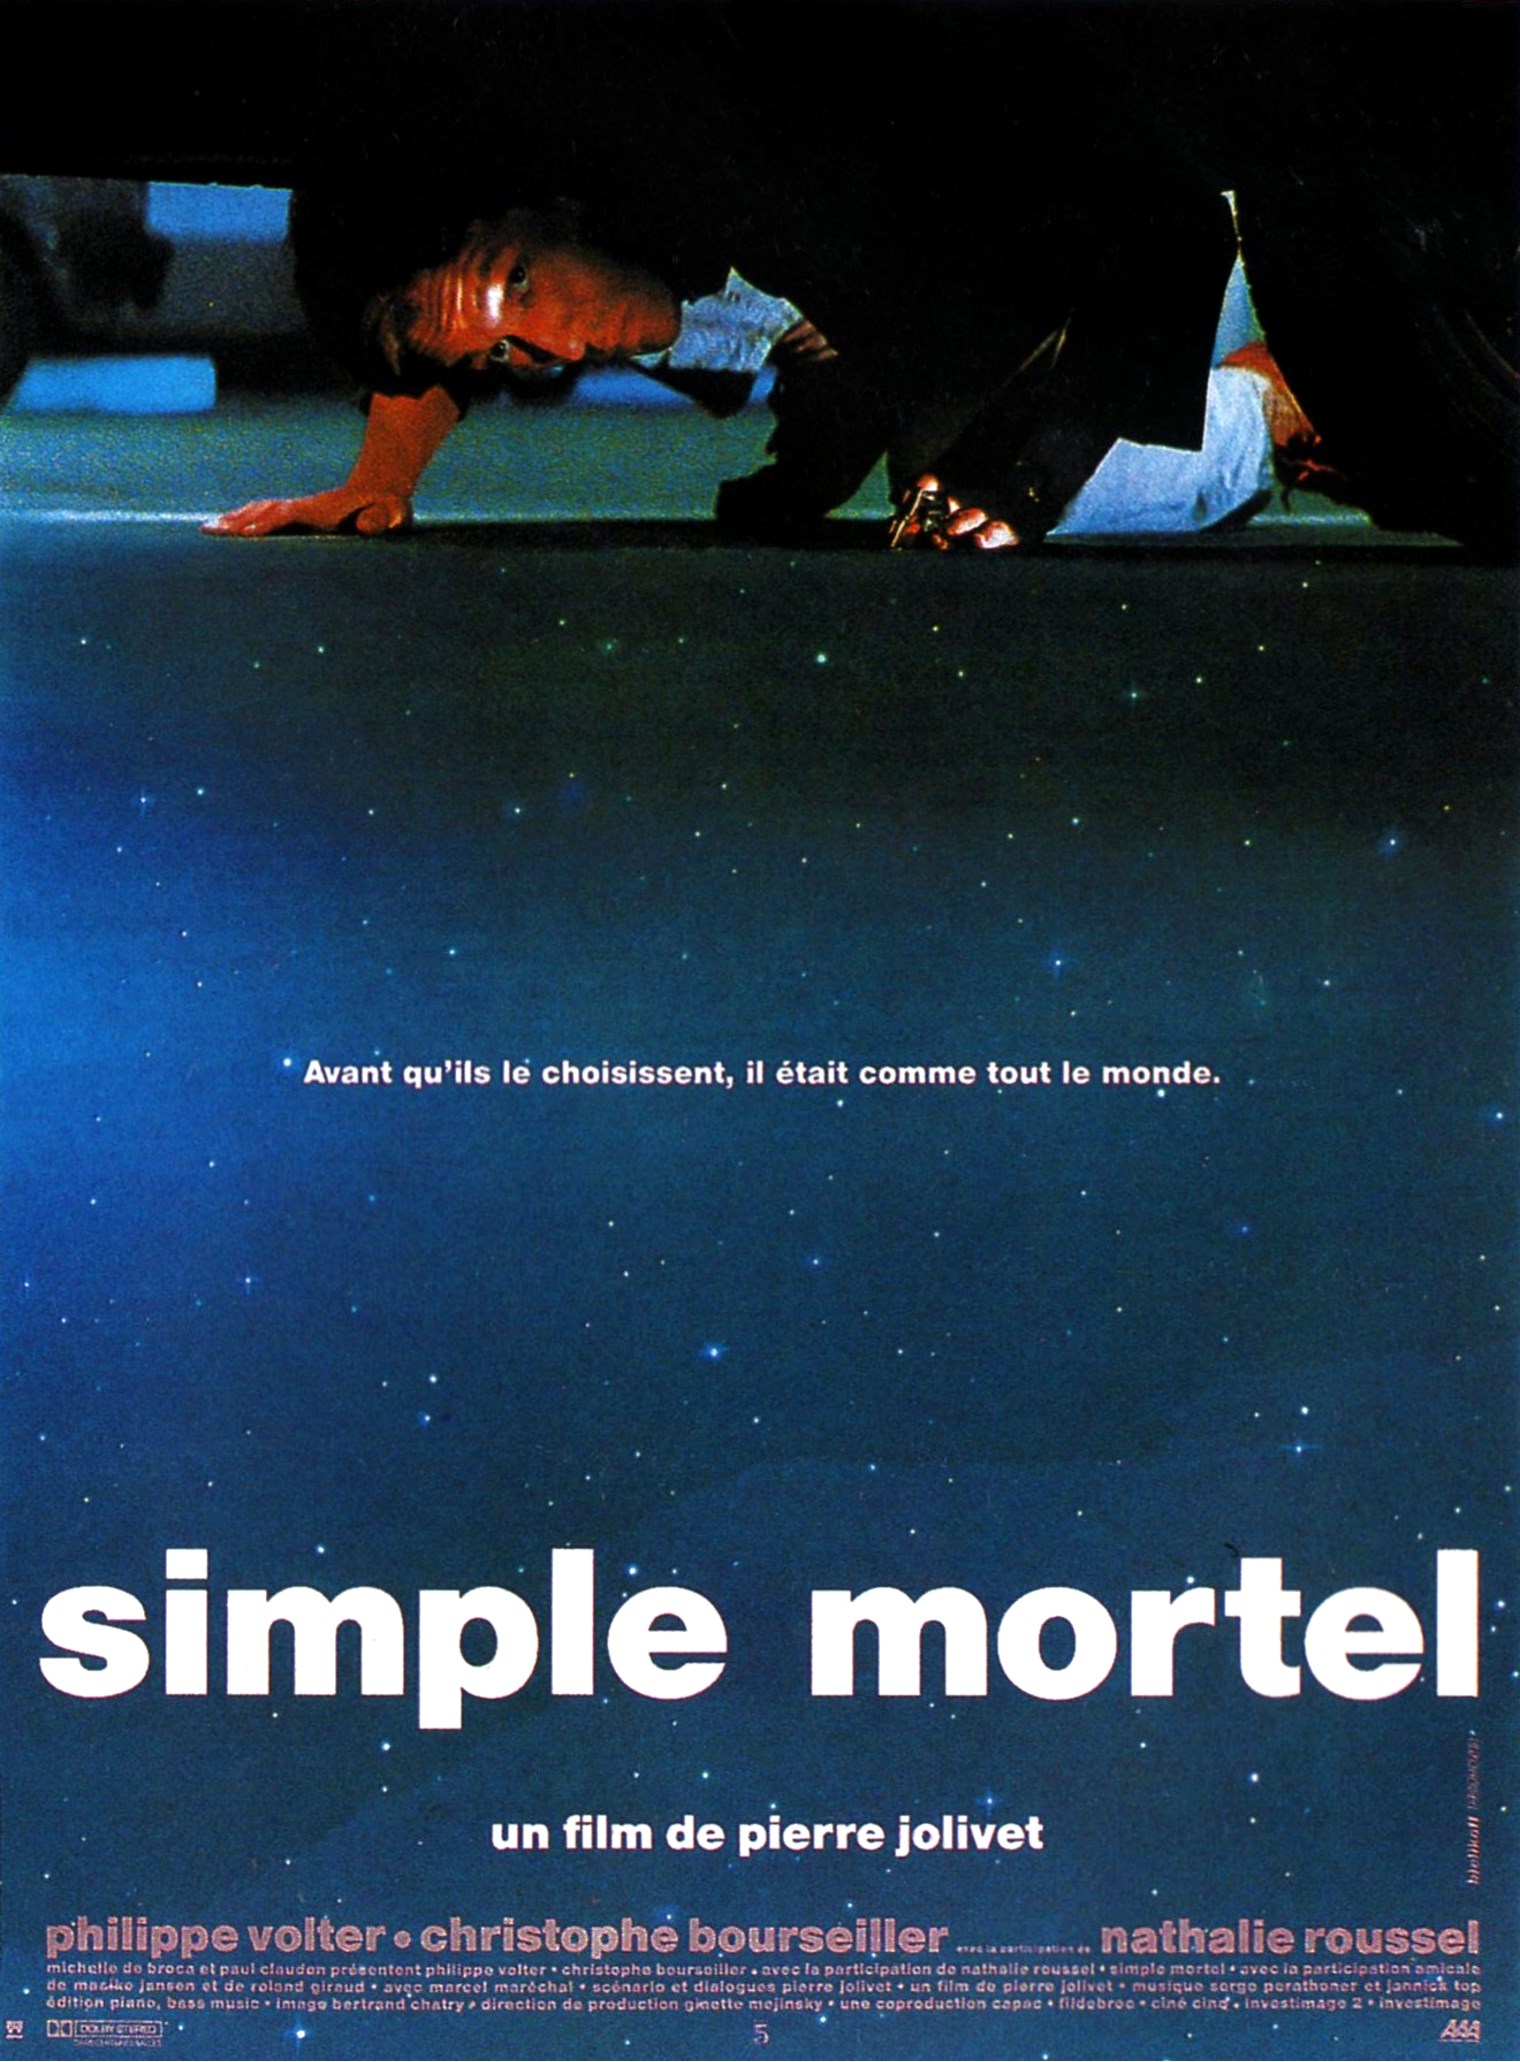 A Mere Mortal (1991) Screenshot 2 